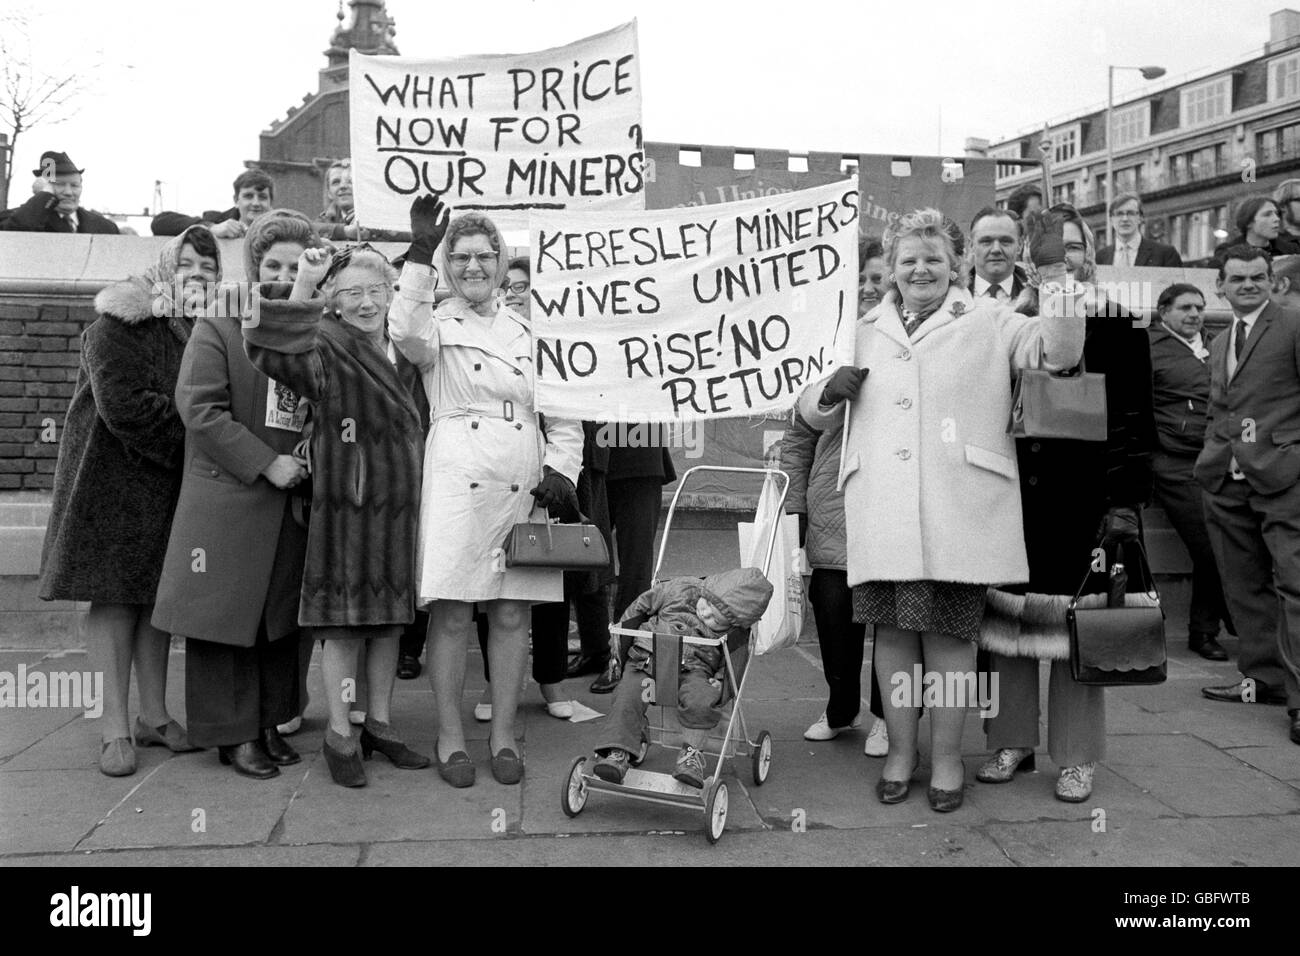 Bergleute und ihre Frauen aus Keresley Colliery, Coventry, demonstrieren in der Nähe des Tower of London. Bergleute und Gewerkschafter versammeln sich am Tower Green, um nach Westminster zu marschieren, wo sie planten, ihre Parlamentsmitglieder zu lobbyieren. Stockfoto